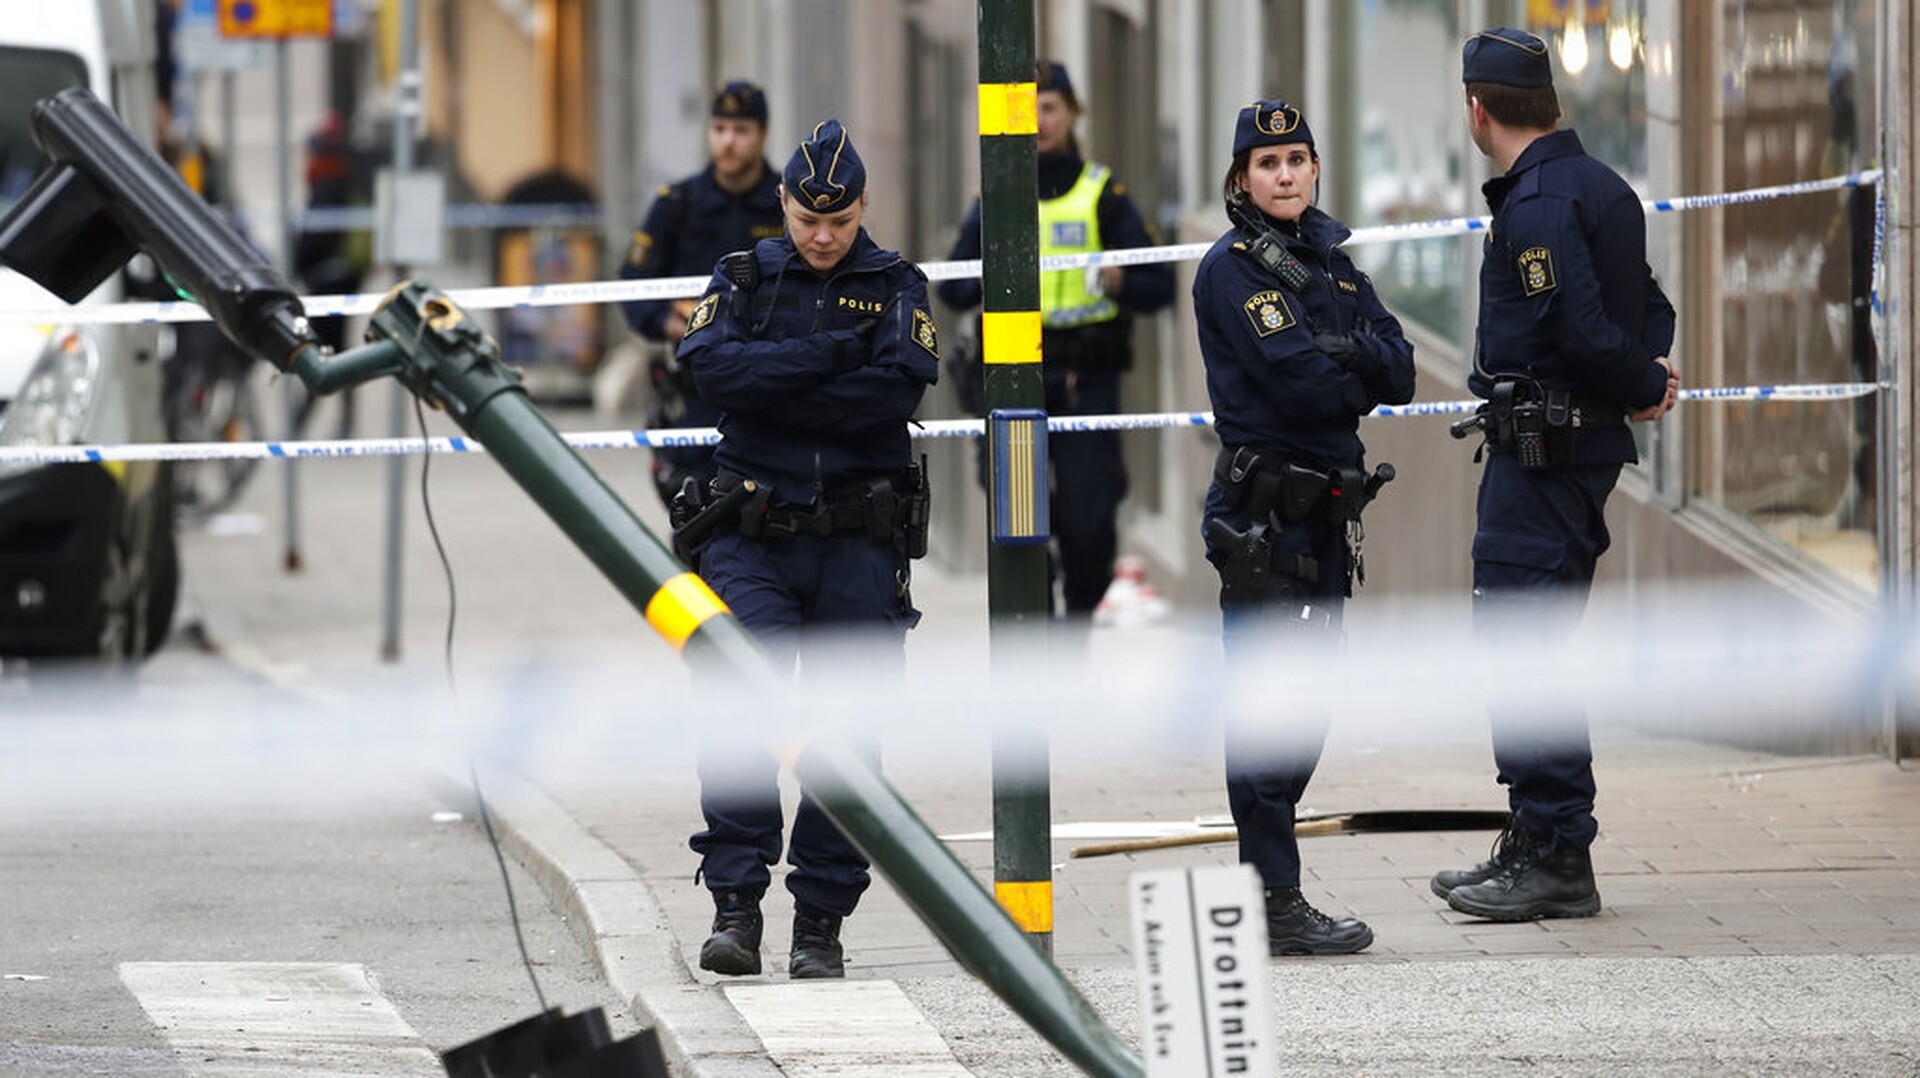 Σουηδία: Πληροφορίες από την αστυνομία διοχετεύονται σε συμμορίες - Ανήσυχος ο πρωθυπουργός